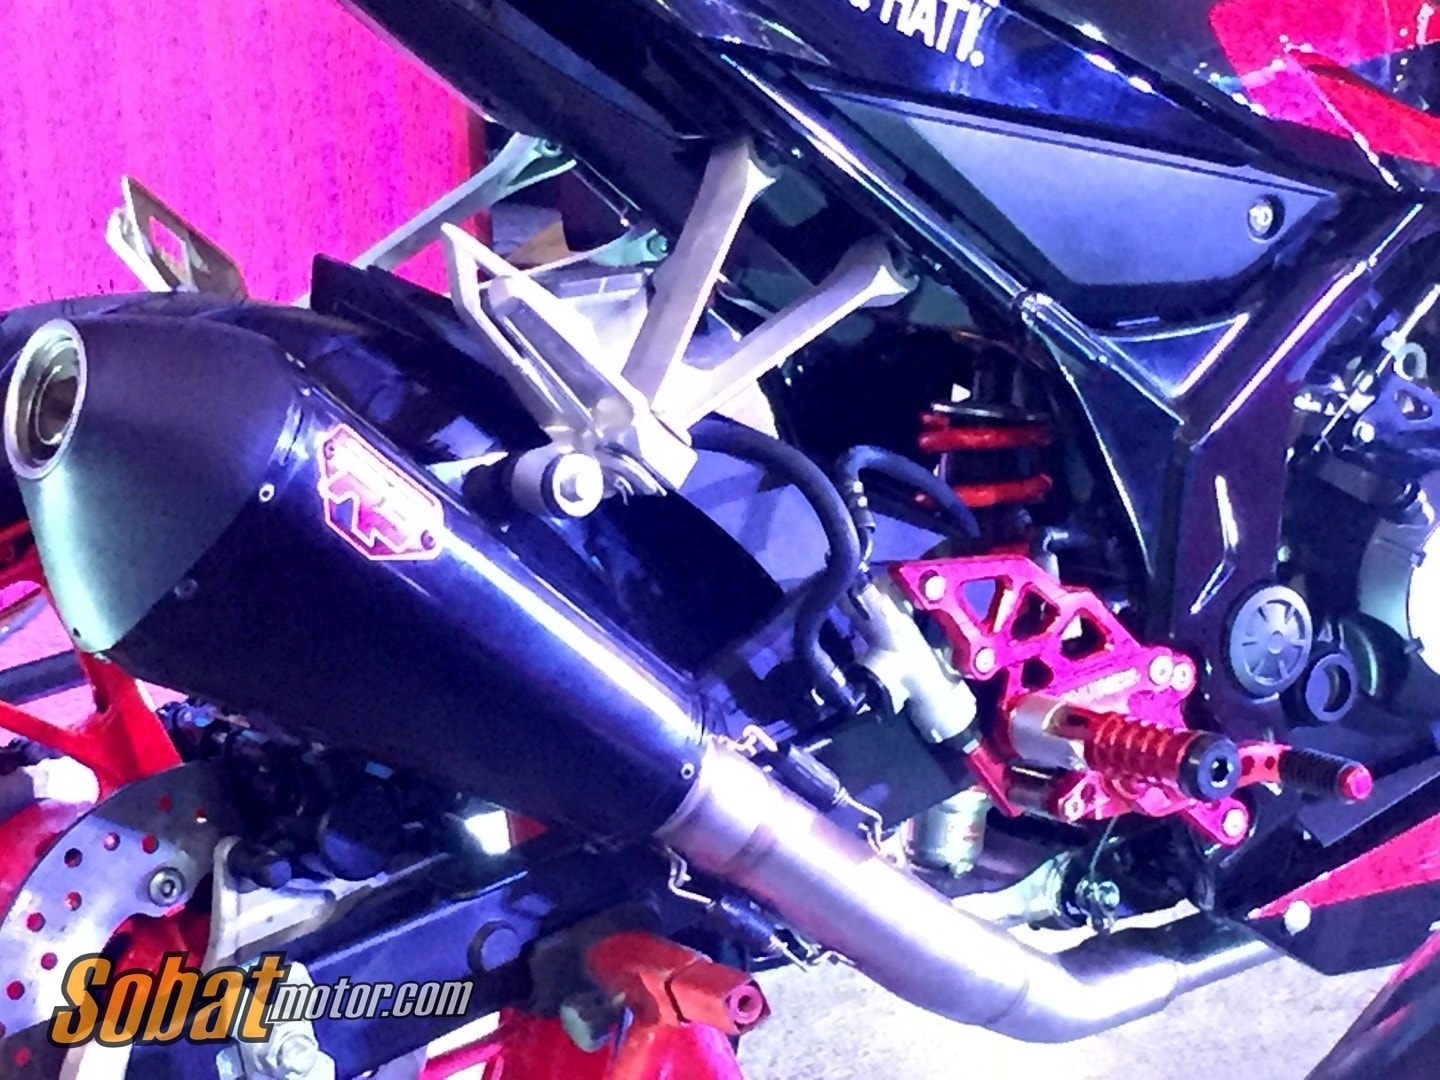 Intip beberapa detail All New CBR150R Special Edition custom yang dilelang di acara Honda Sport Motor Show 2017 dikota Medan